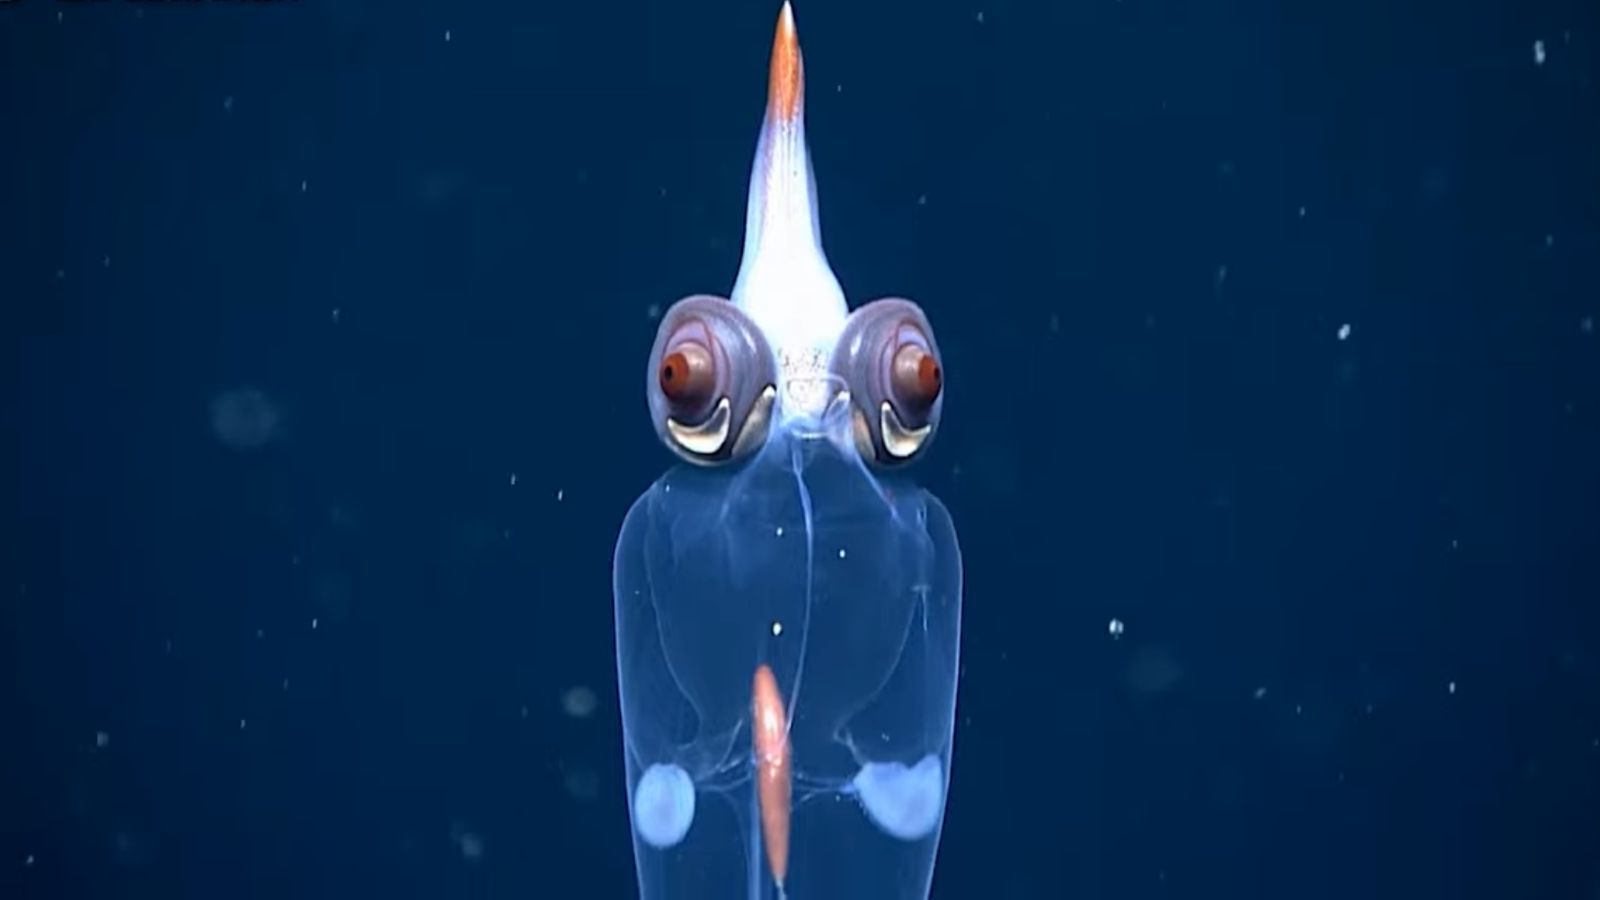 Посмотрите на прозрачного кальмара с «демоническими» глазами